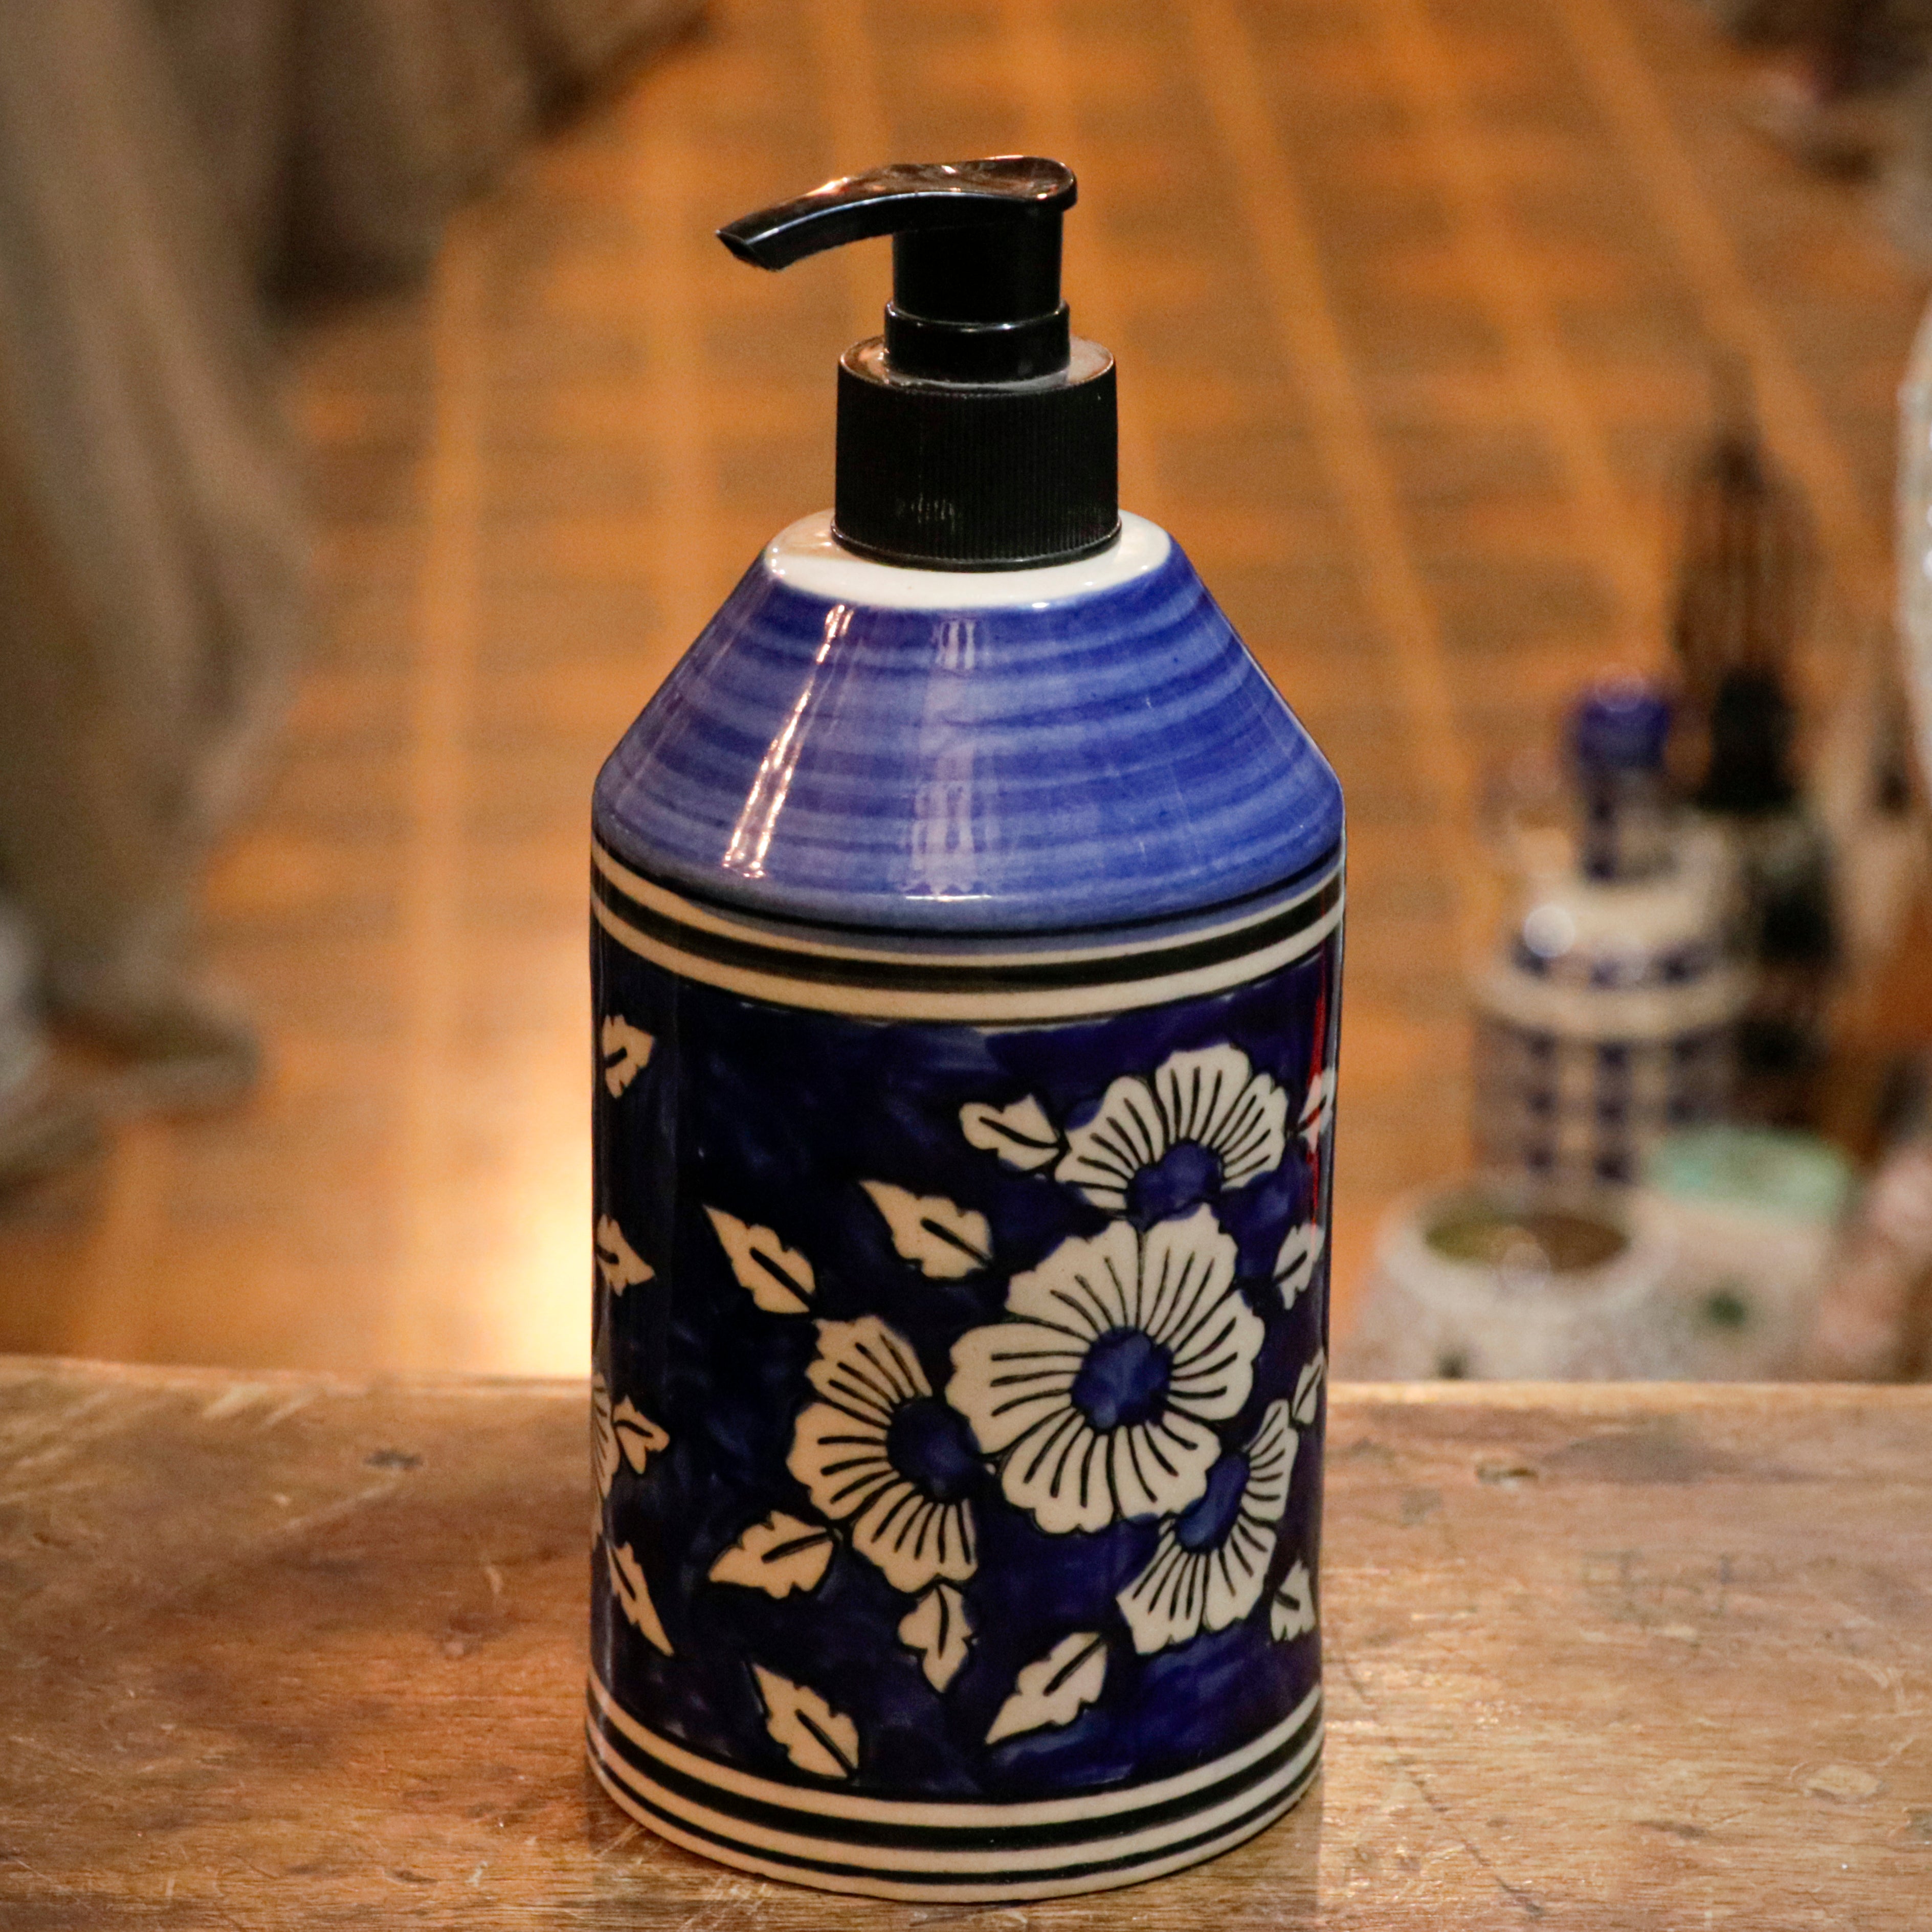 Antique Turbon Flower Hand-Painted Hand Wash Liquid Ceramic Bottle Hand Wash Bottle